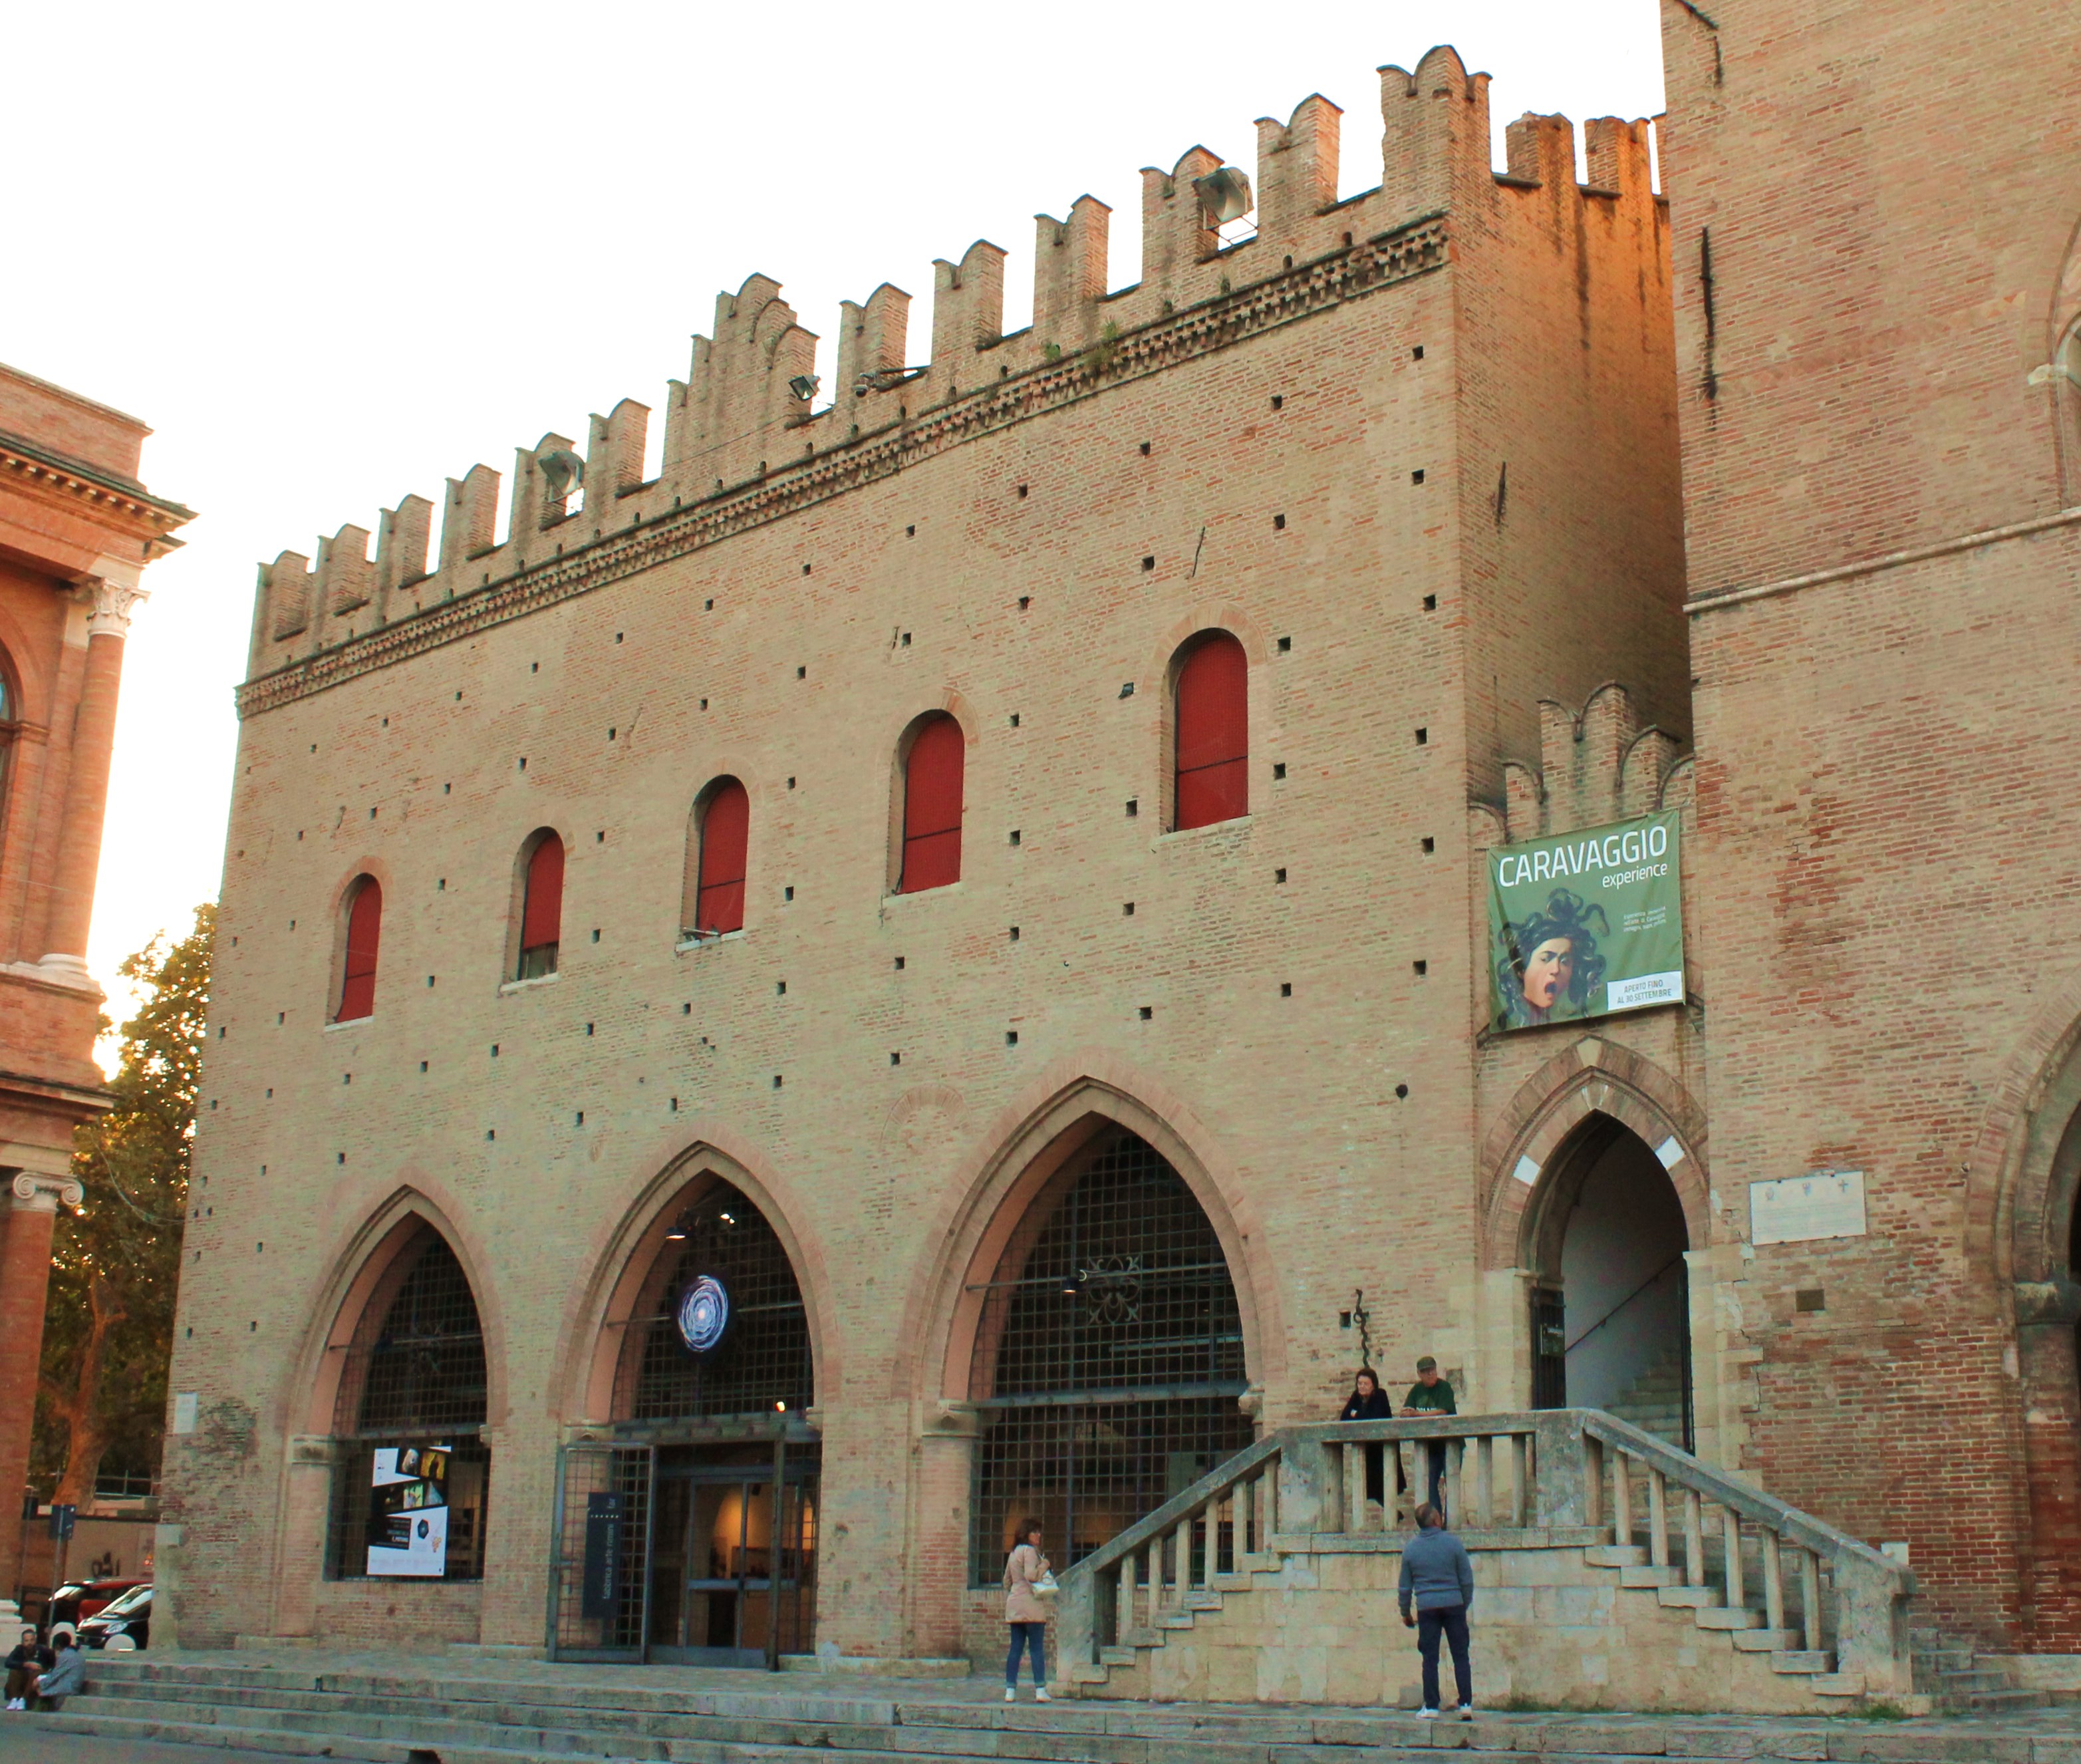 photo: https://upload.wikimedia.org/wikipedia/commons/e/eb/Palazzo_del_Podest%C3%A0_di_Rimini.jpg